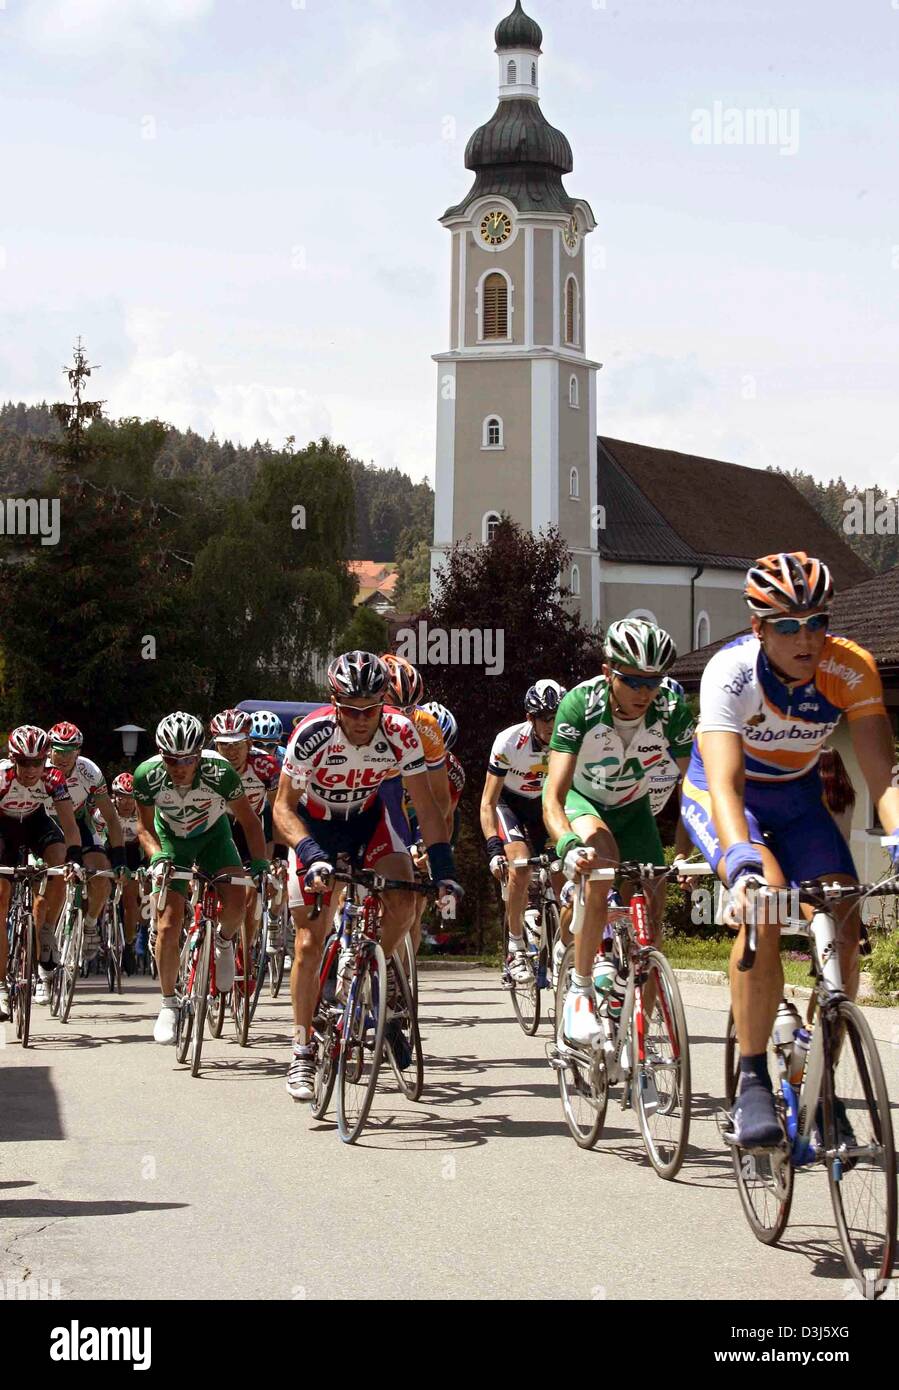 (Afp) - Les cyclistes roulent pendant 166,6 km de long troisième étape du Tour de France cycliste de Wangen im Allgaeu, Allemagne, à Sankt Anton, Autriche, passé une église dans la ville de Scheidegg, Allemagne, 2 juin 2004. Banque D'Images